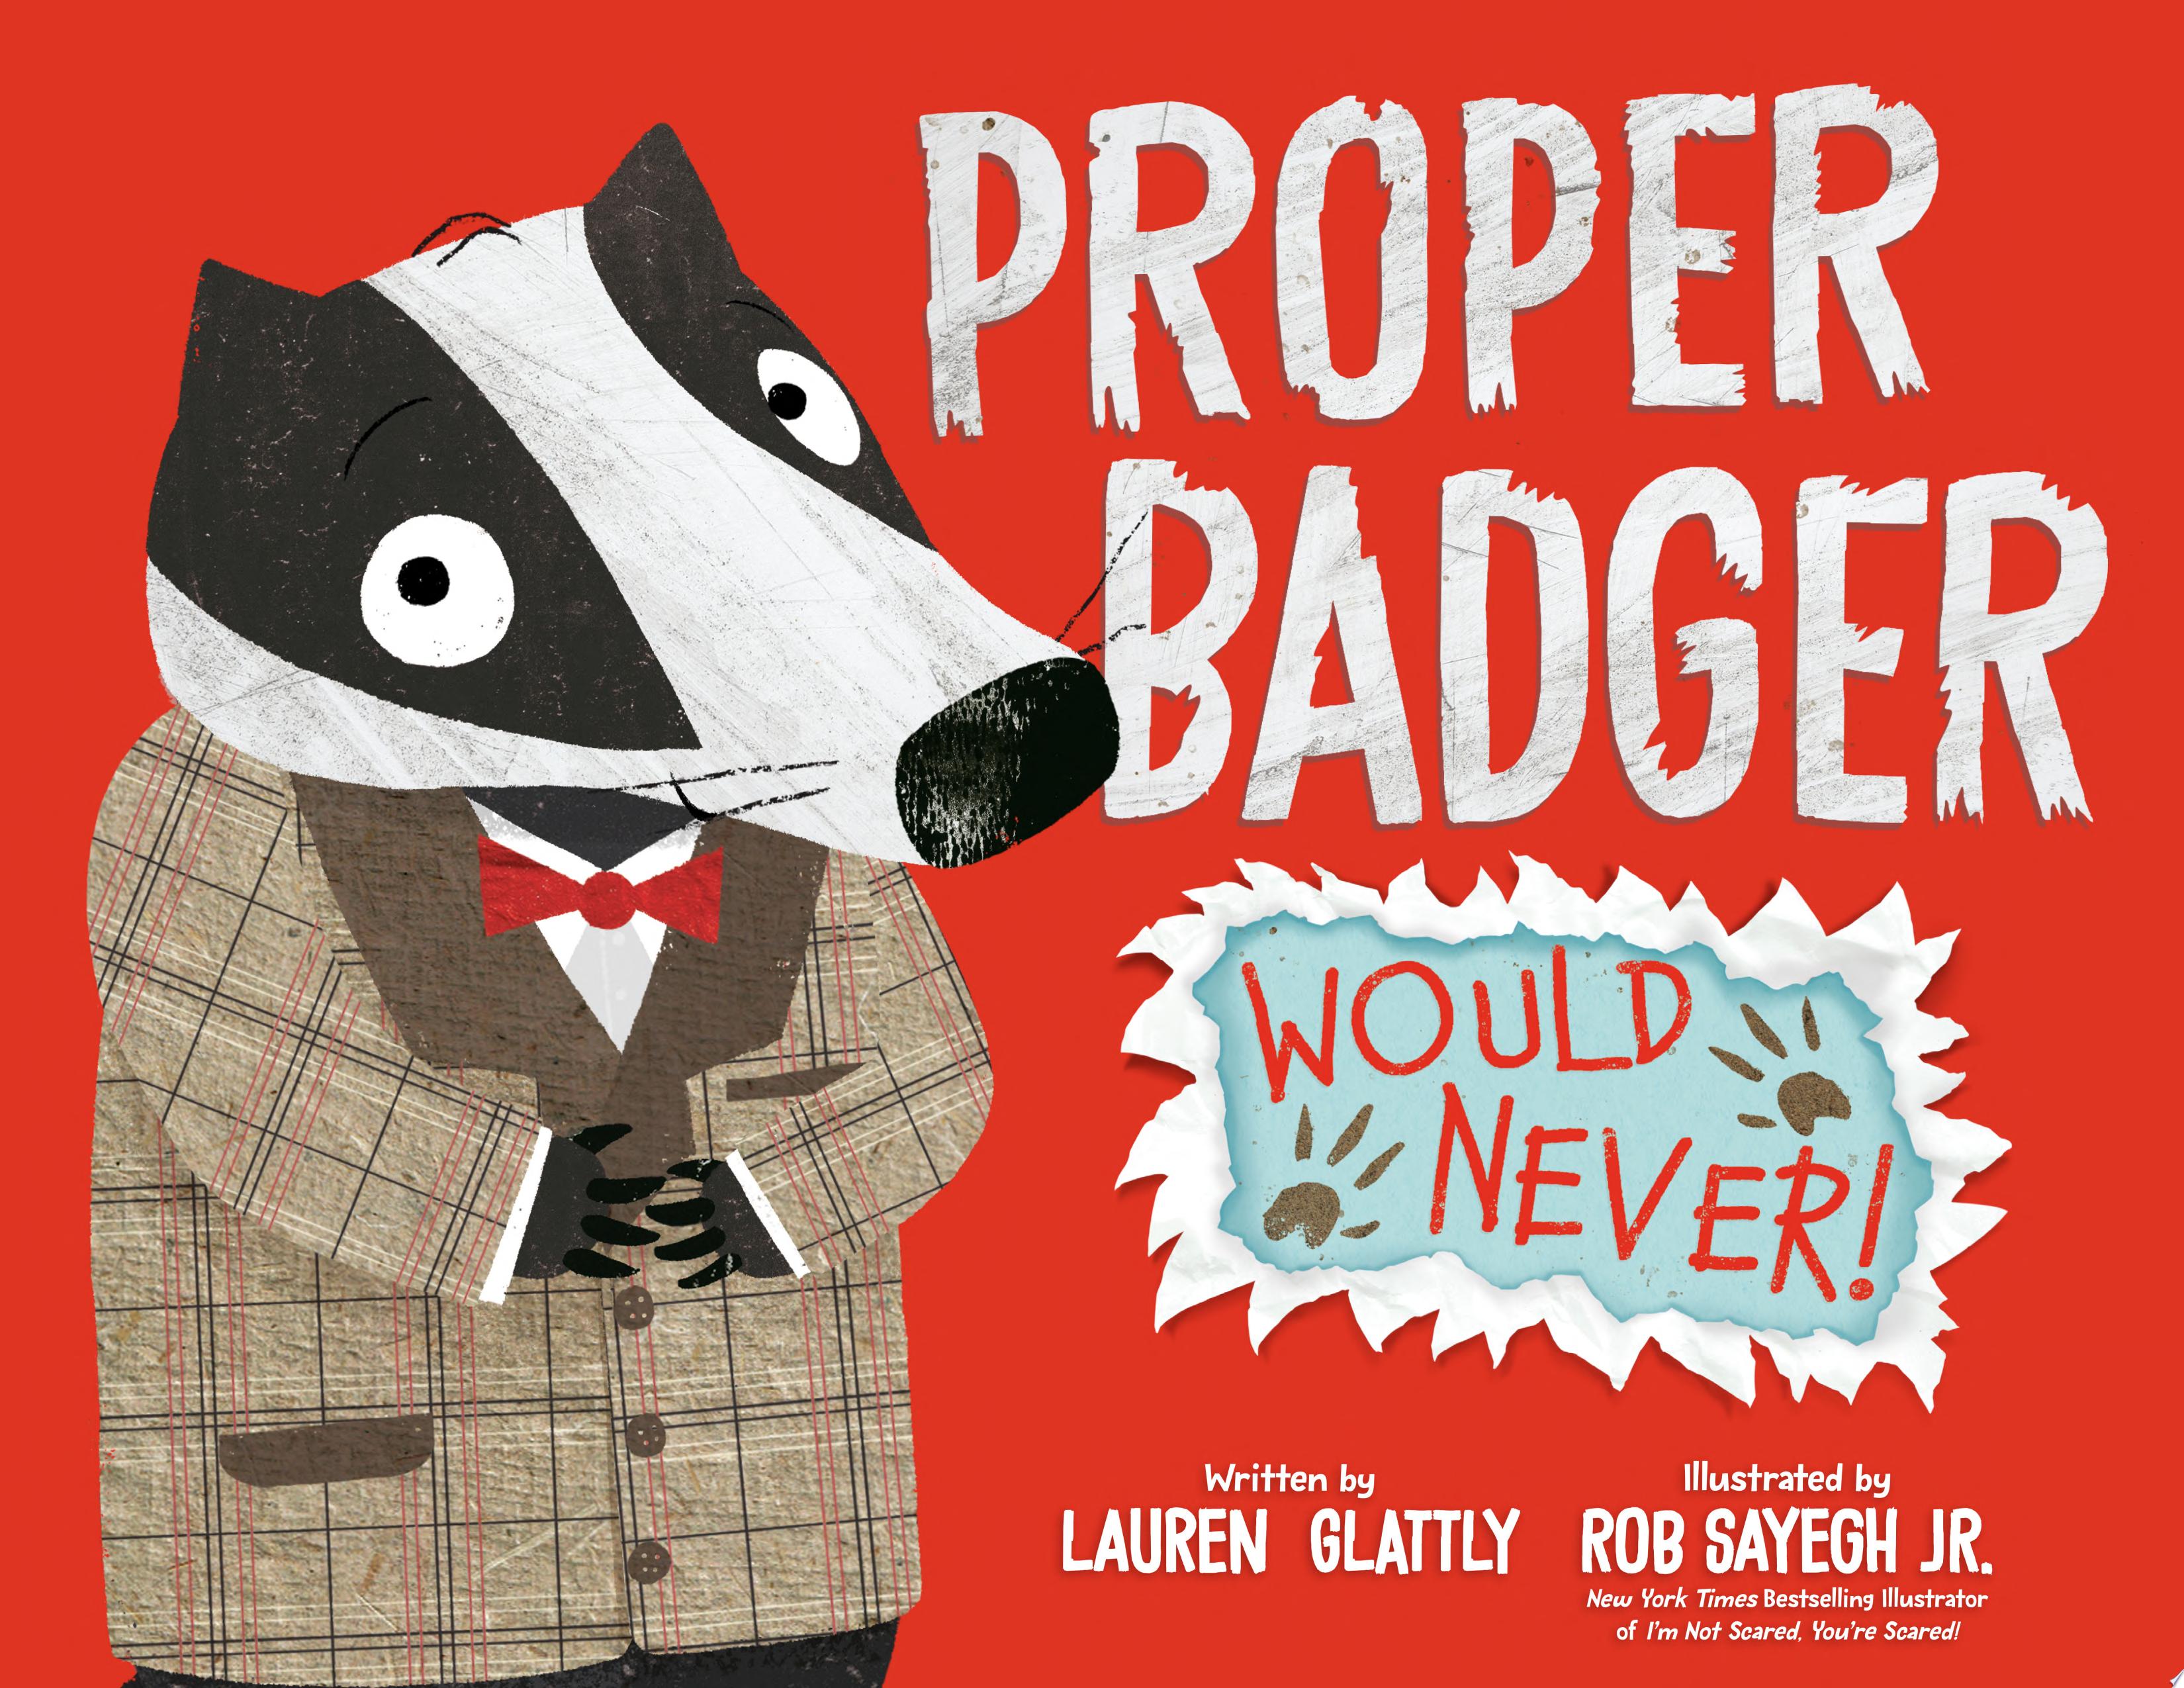 Image for "Proper Badger Would Never!"